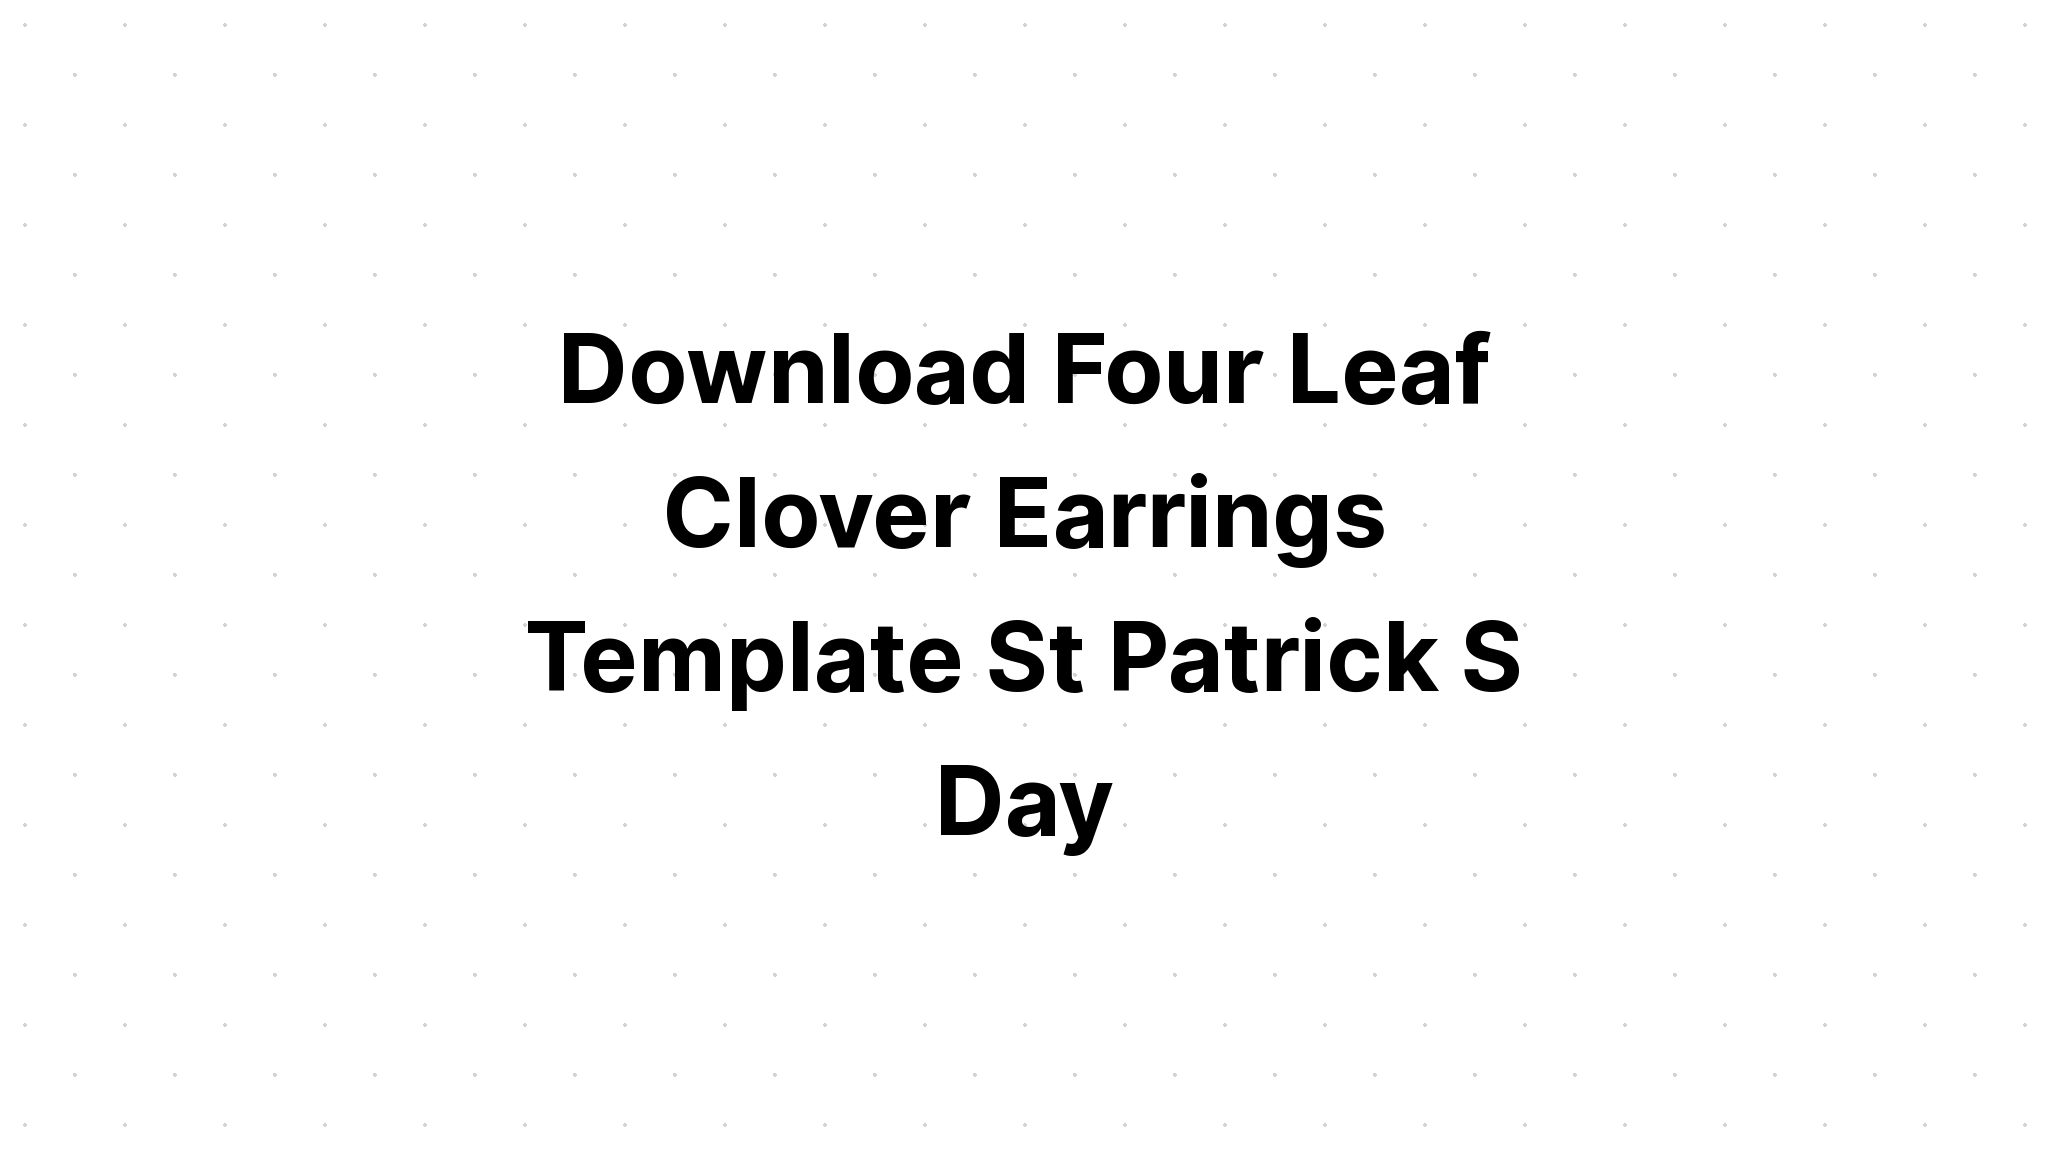 Download St Patricks Day Love Shamrock Leaf SVG File